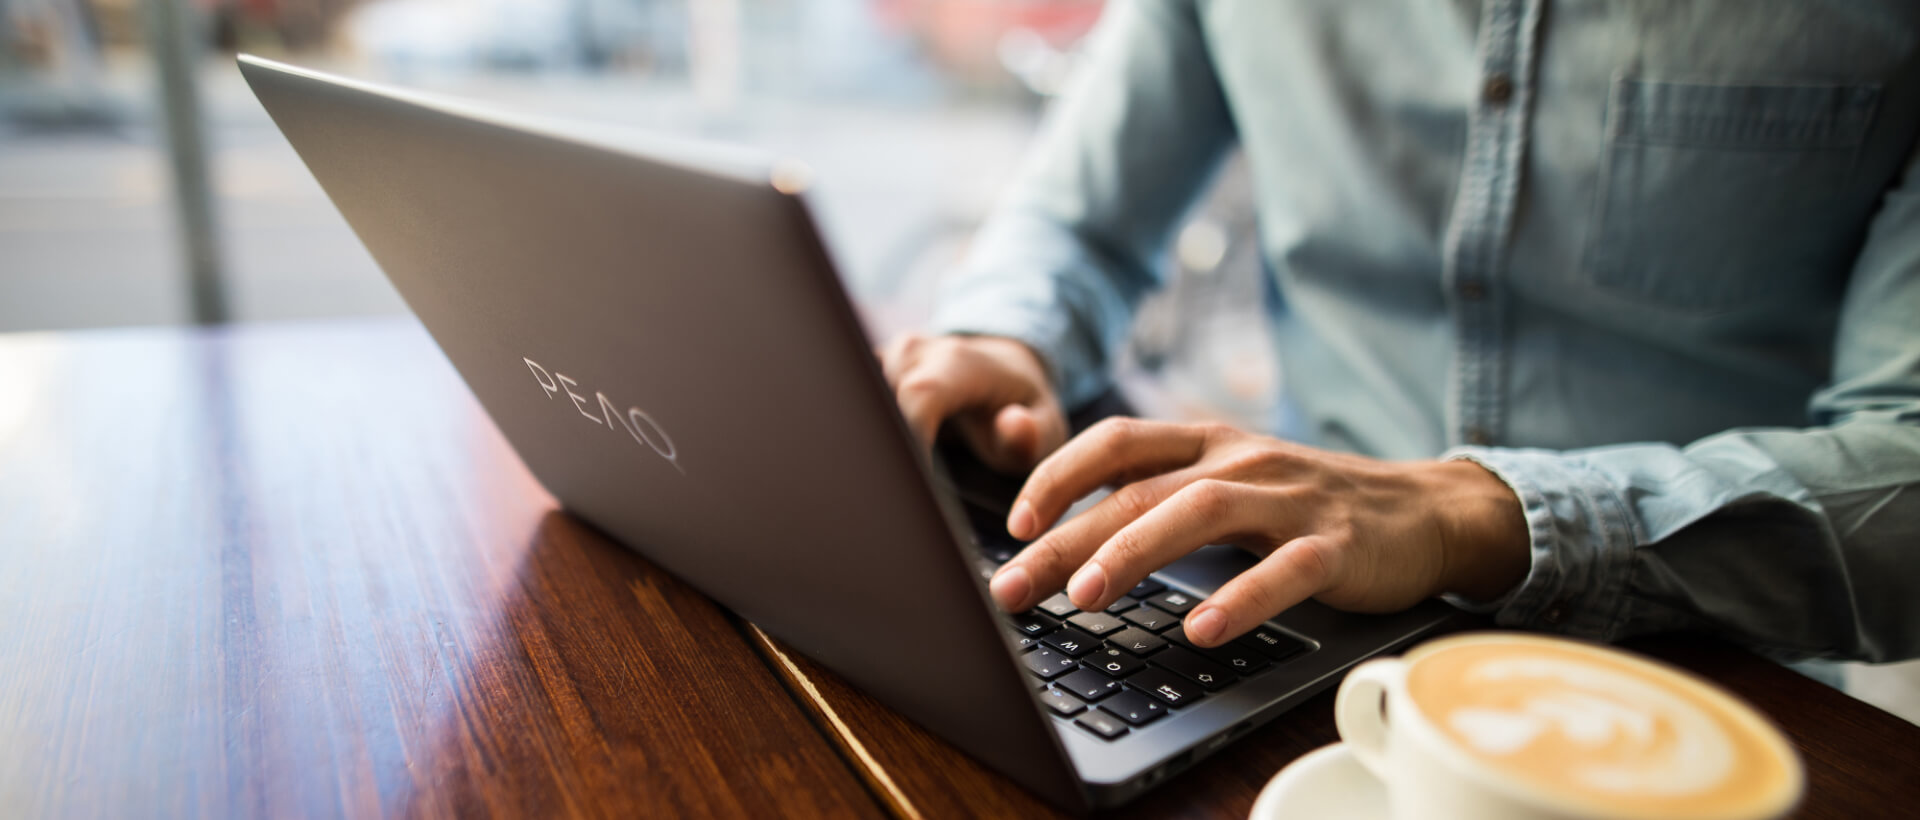 Jonge man typt op een laptop van PEAQ, daarnaast een volle kop koffie, zit in een café, panorama